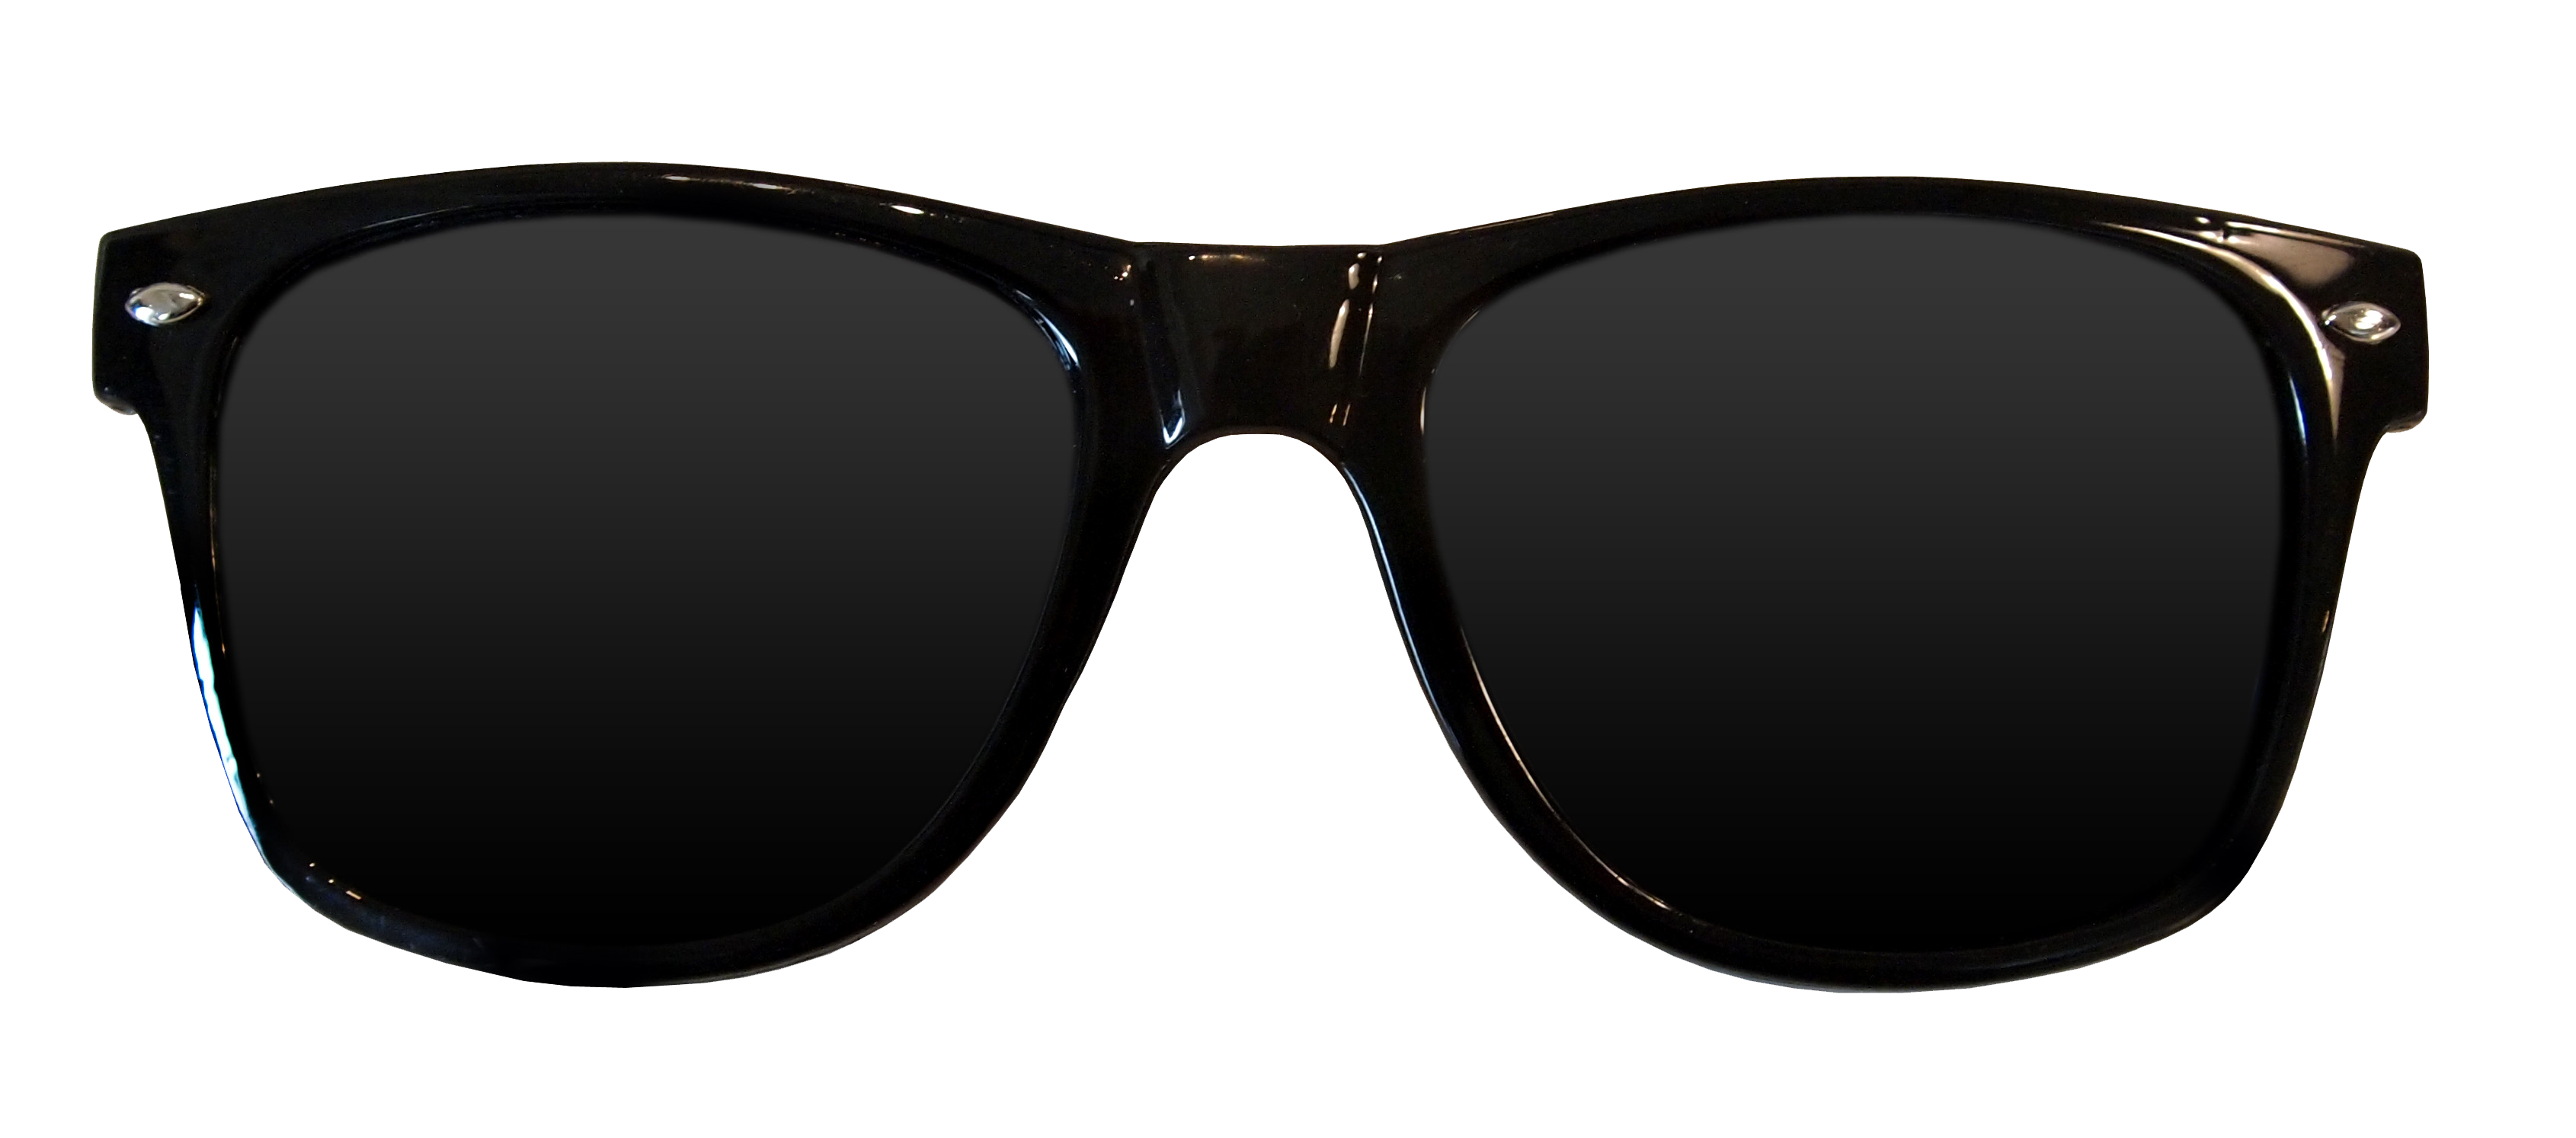 Sunglasses HD PNG - 96517